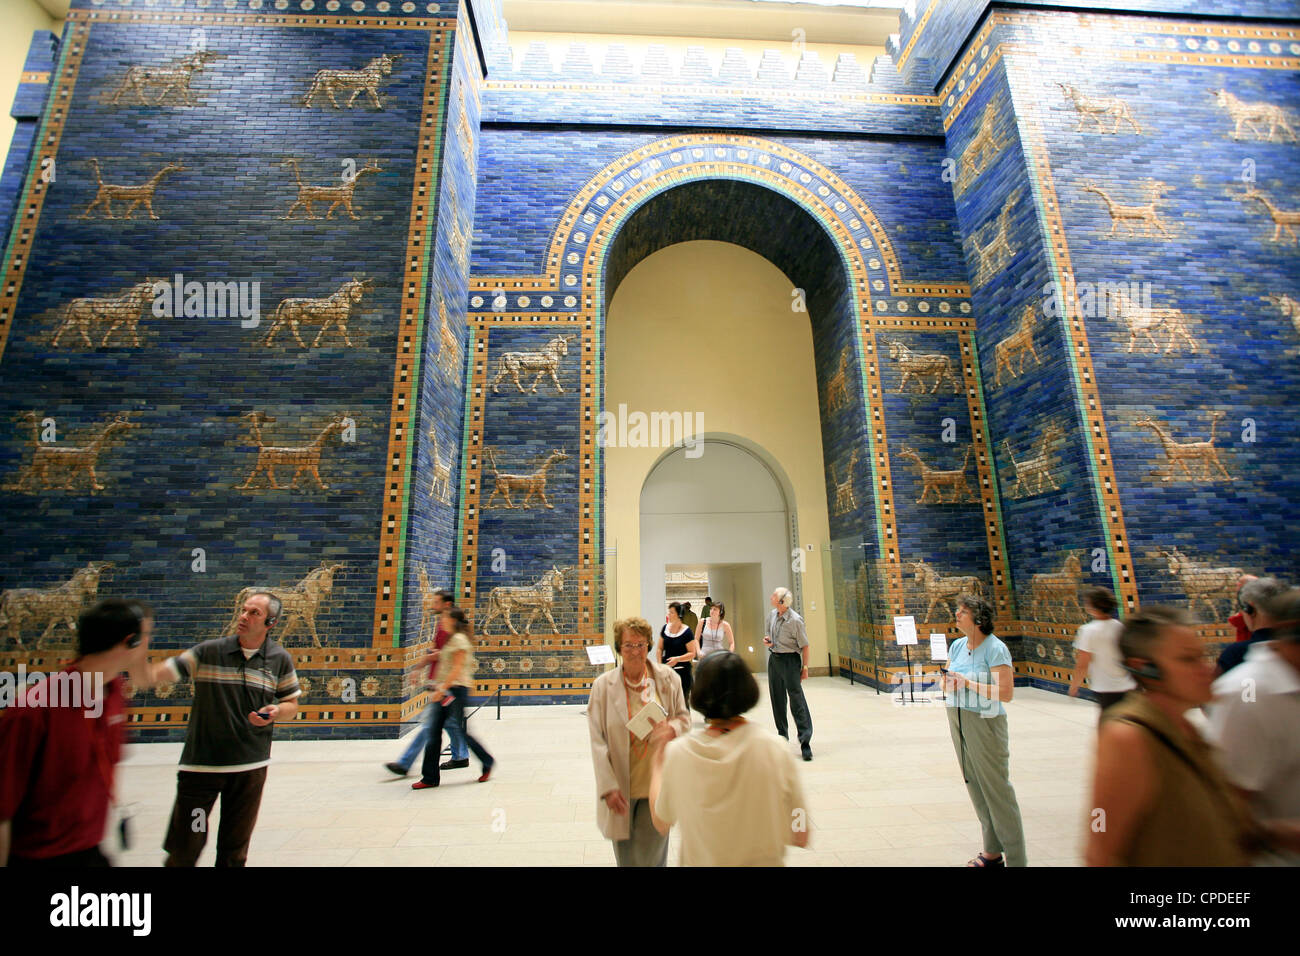 La porte d'Ishtar, Musée de Pergame, Berlin, Germany, Europe Banque D'Images